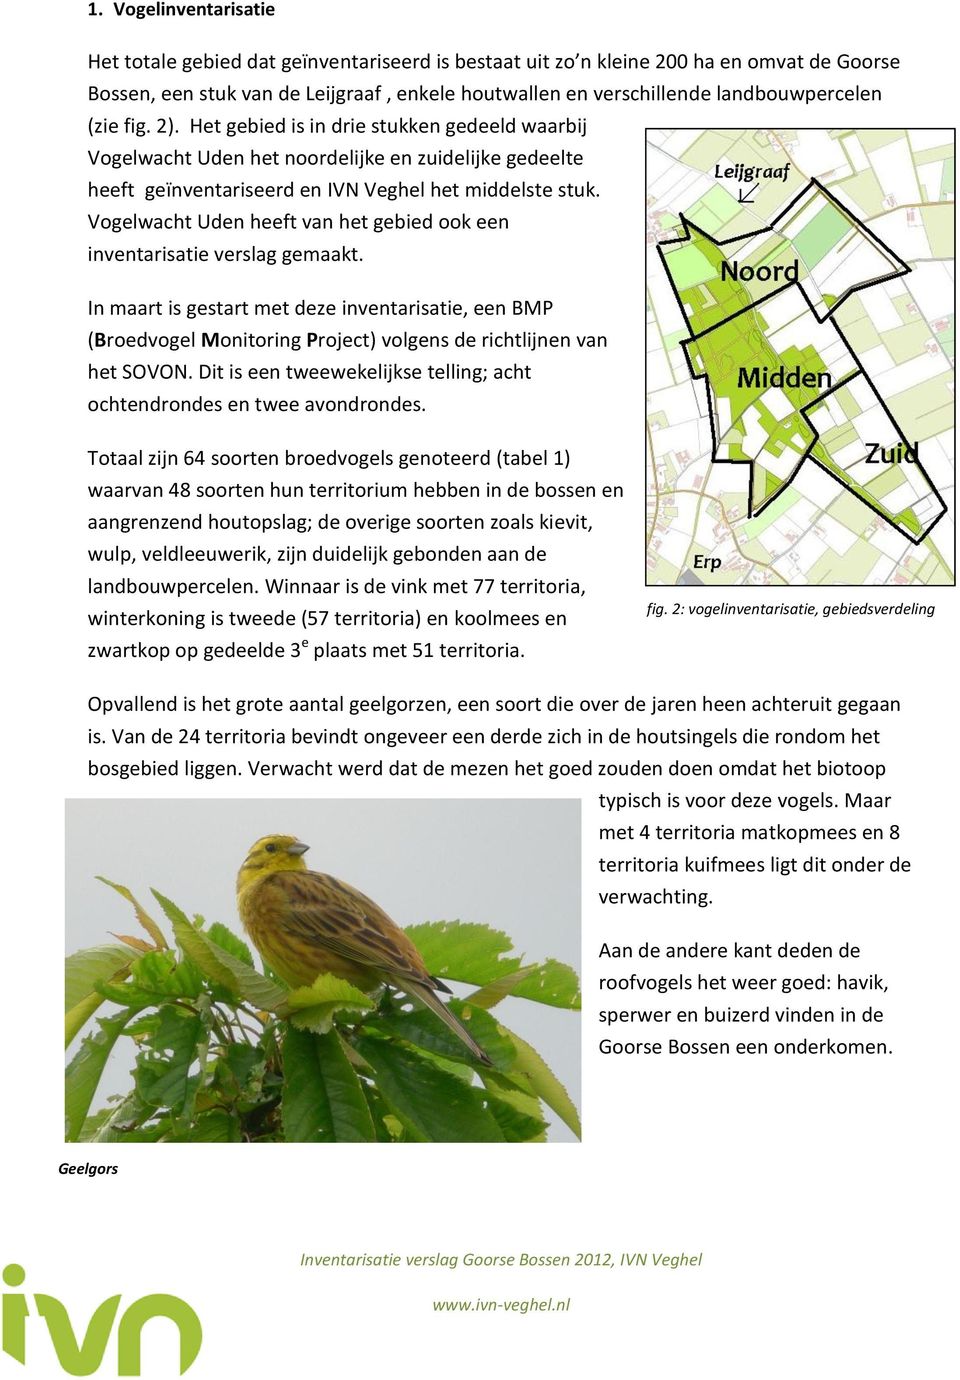 Vogelwacht Uden heeft van het gebied ook een inventarisatie verslag gemaakt. In maart is gestart met deze inventarisatie, een BMP (Broedvogel Monitoring Project) volgens de richtlijnen van het SOVON.